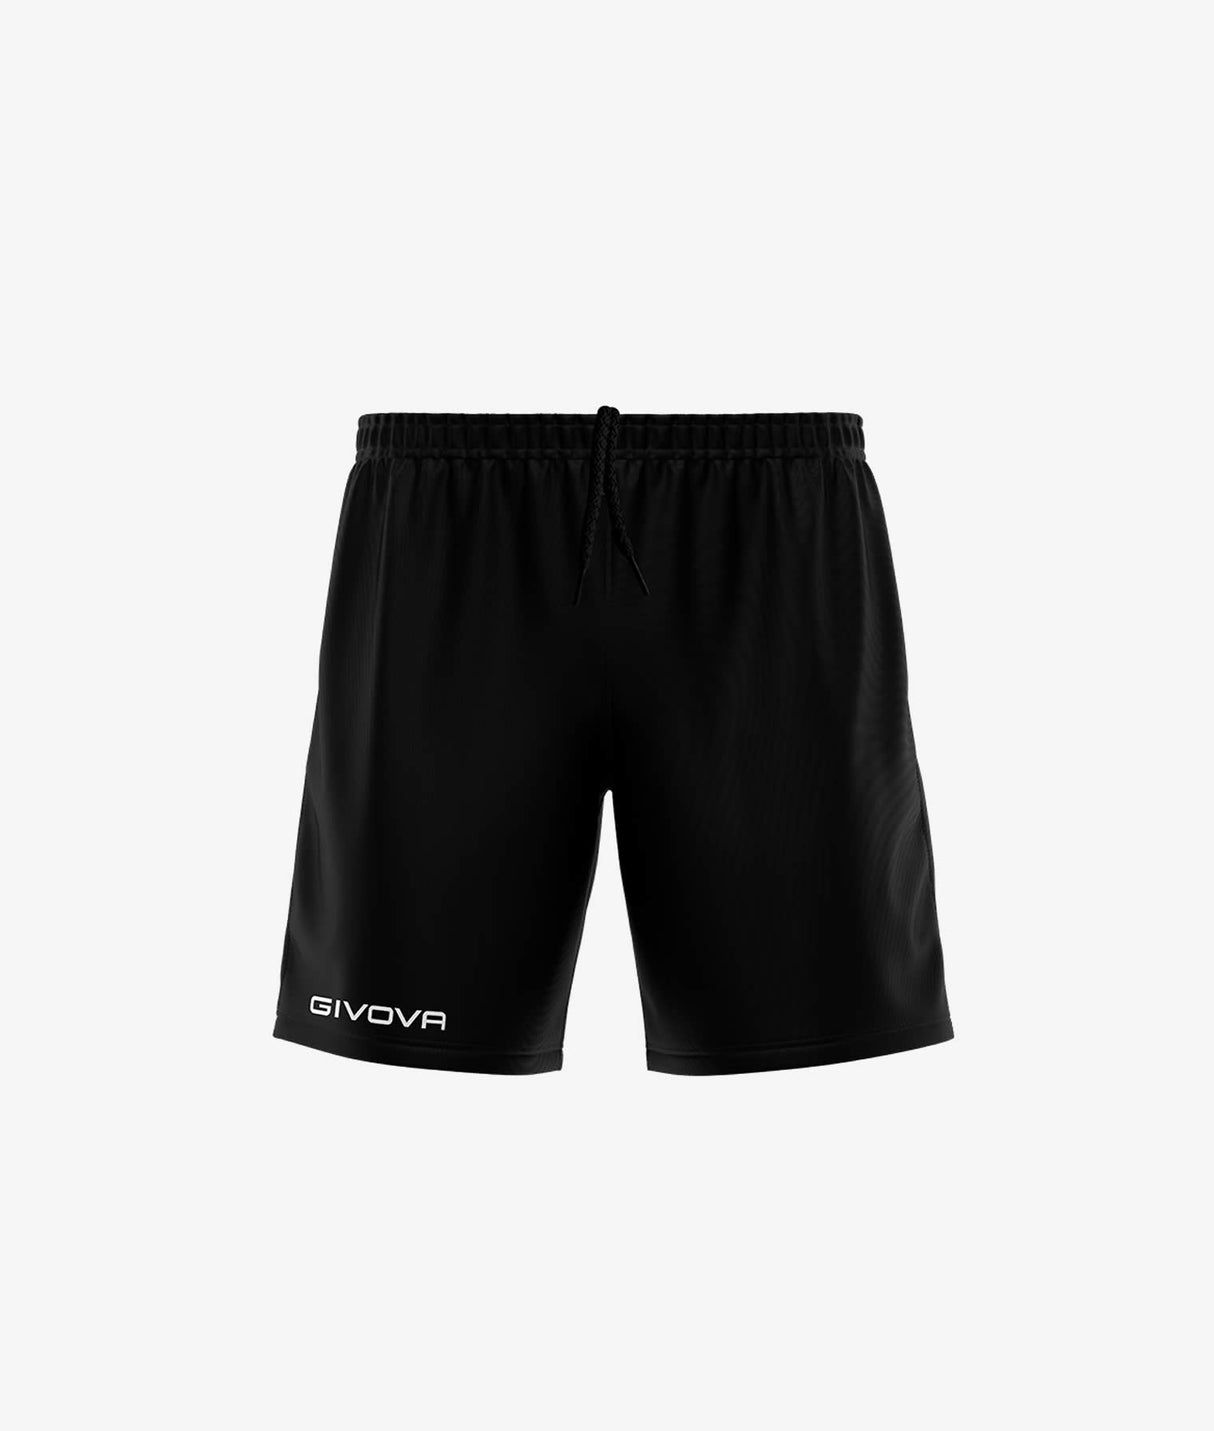 Givova Shorts ONE - schwarz